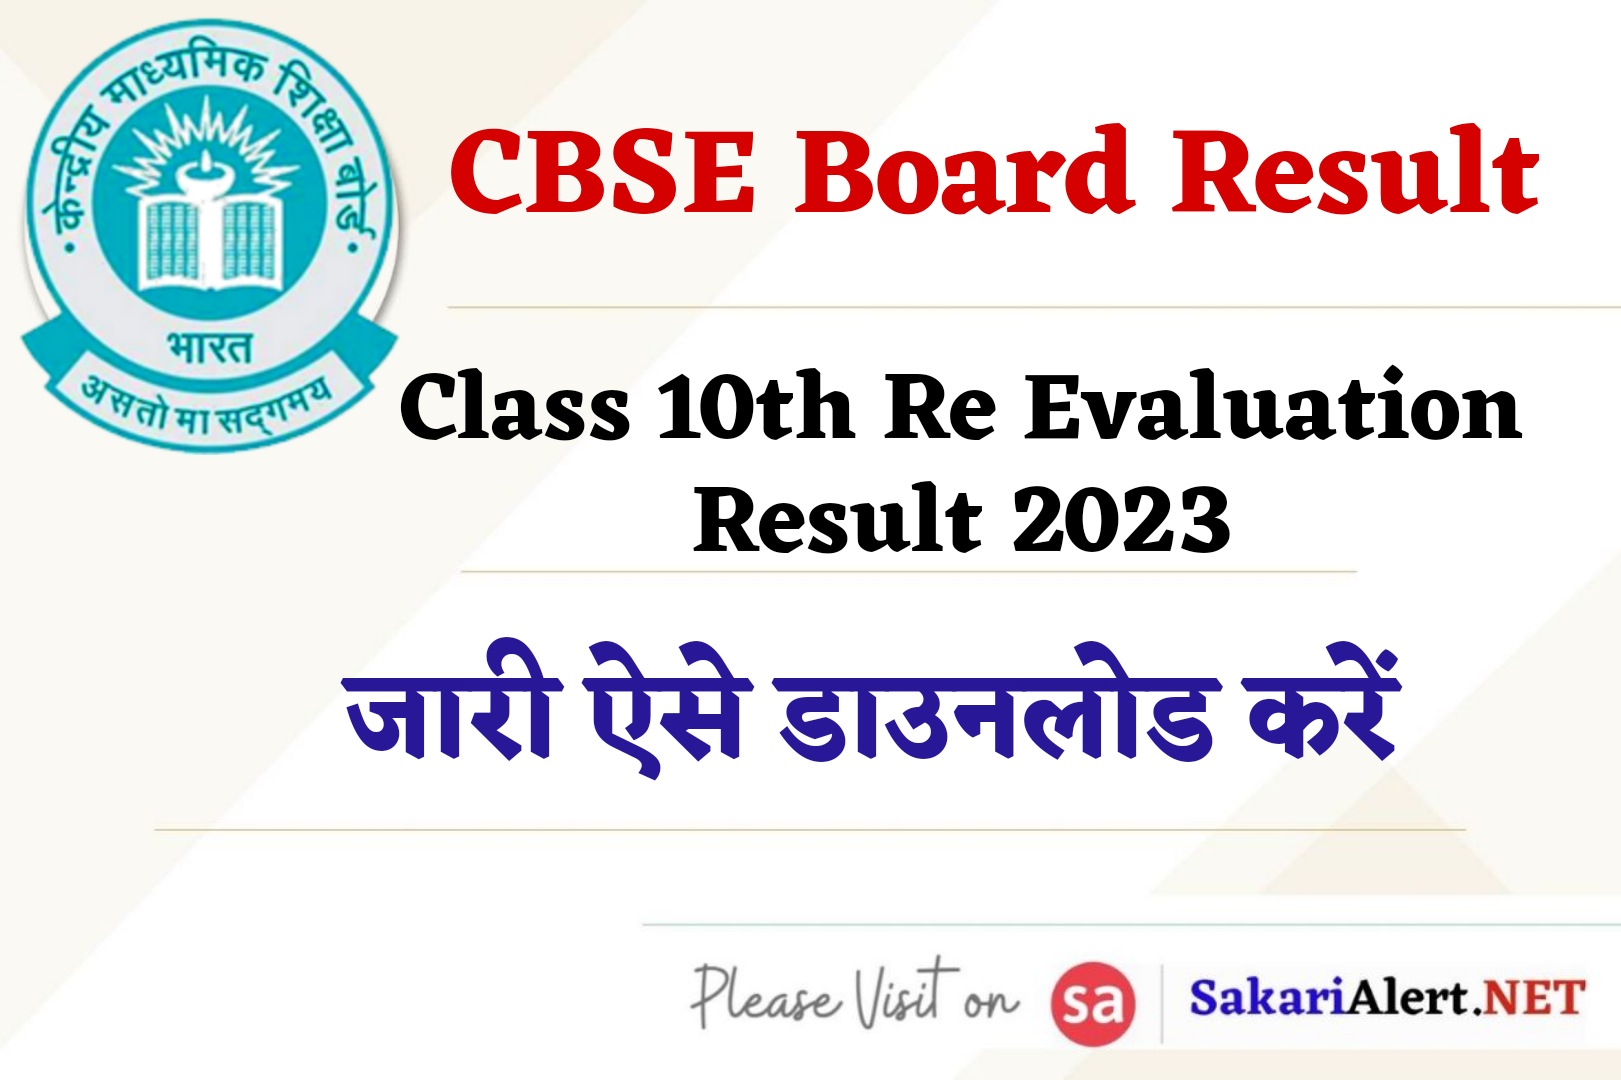 CBSE Board Class 10th Re Evaluation Result 2023 | सीबीएसई बोर्ड रिजल्ट जारी, देखें